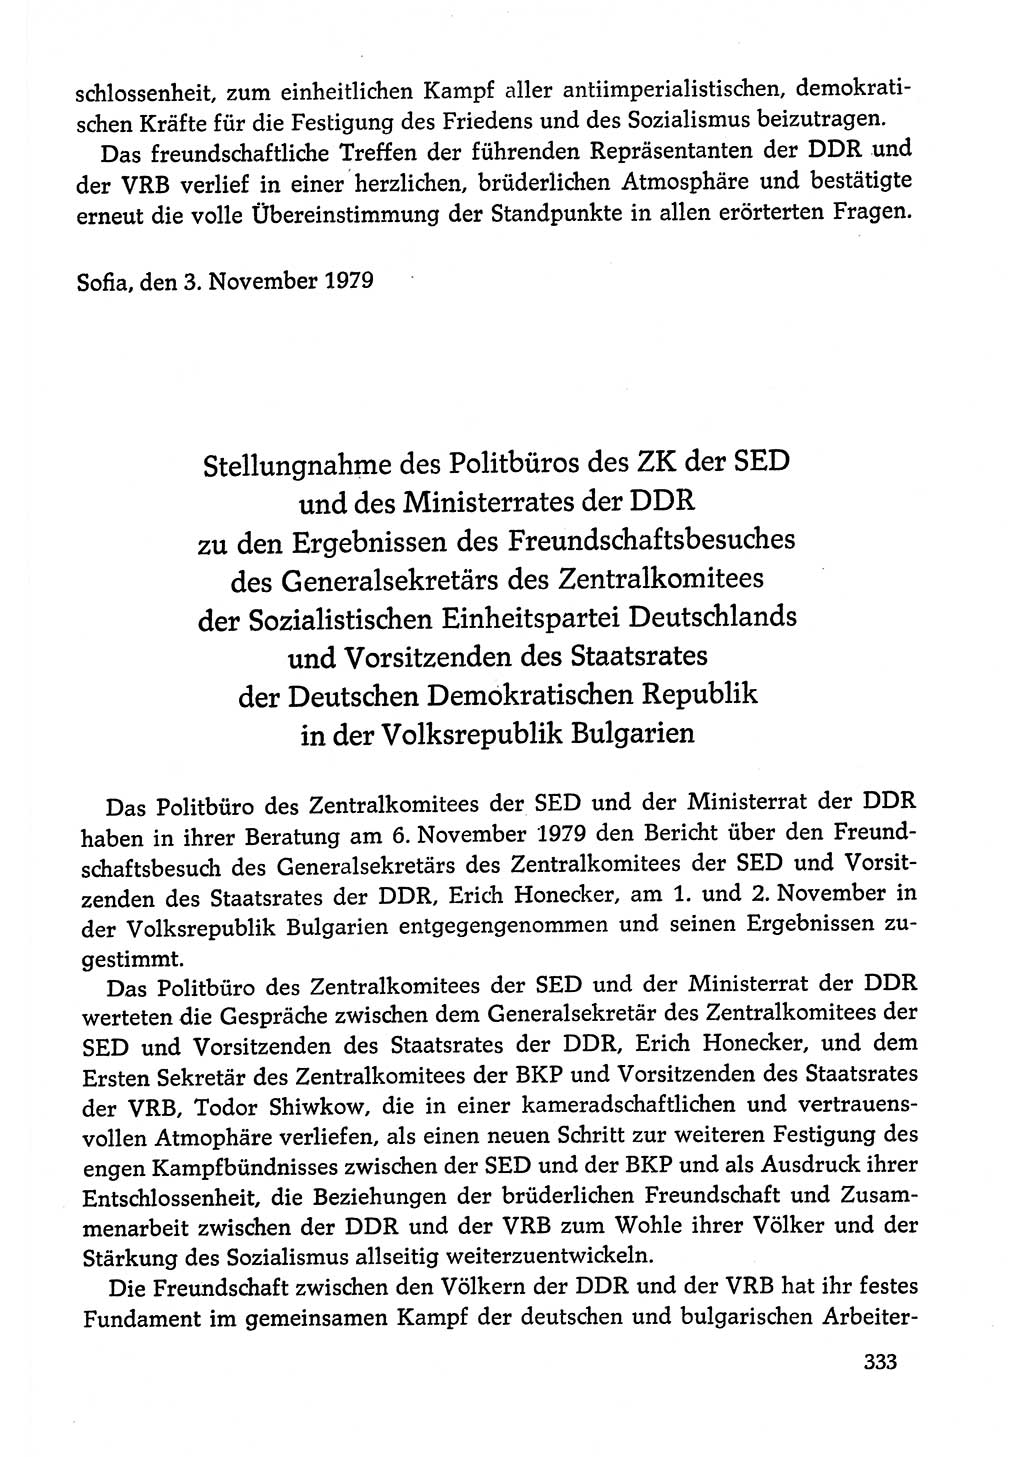 Dokumente der Sozialistischen Einheitspartei Deutschlands (SED) [Deutsche Demokratische Republik (DDR)] 1978-1979, Seite 333 (Dok. SED DDR 1978-1979, S. 333)